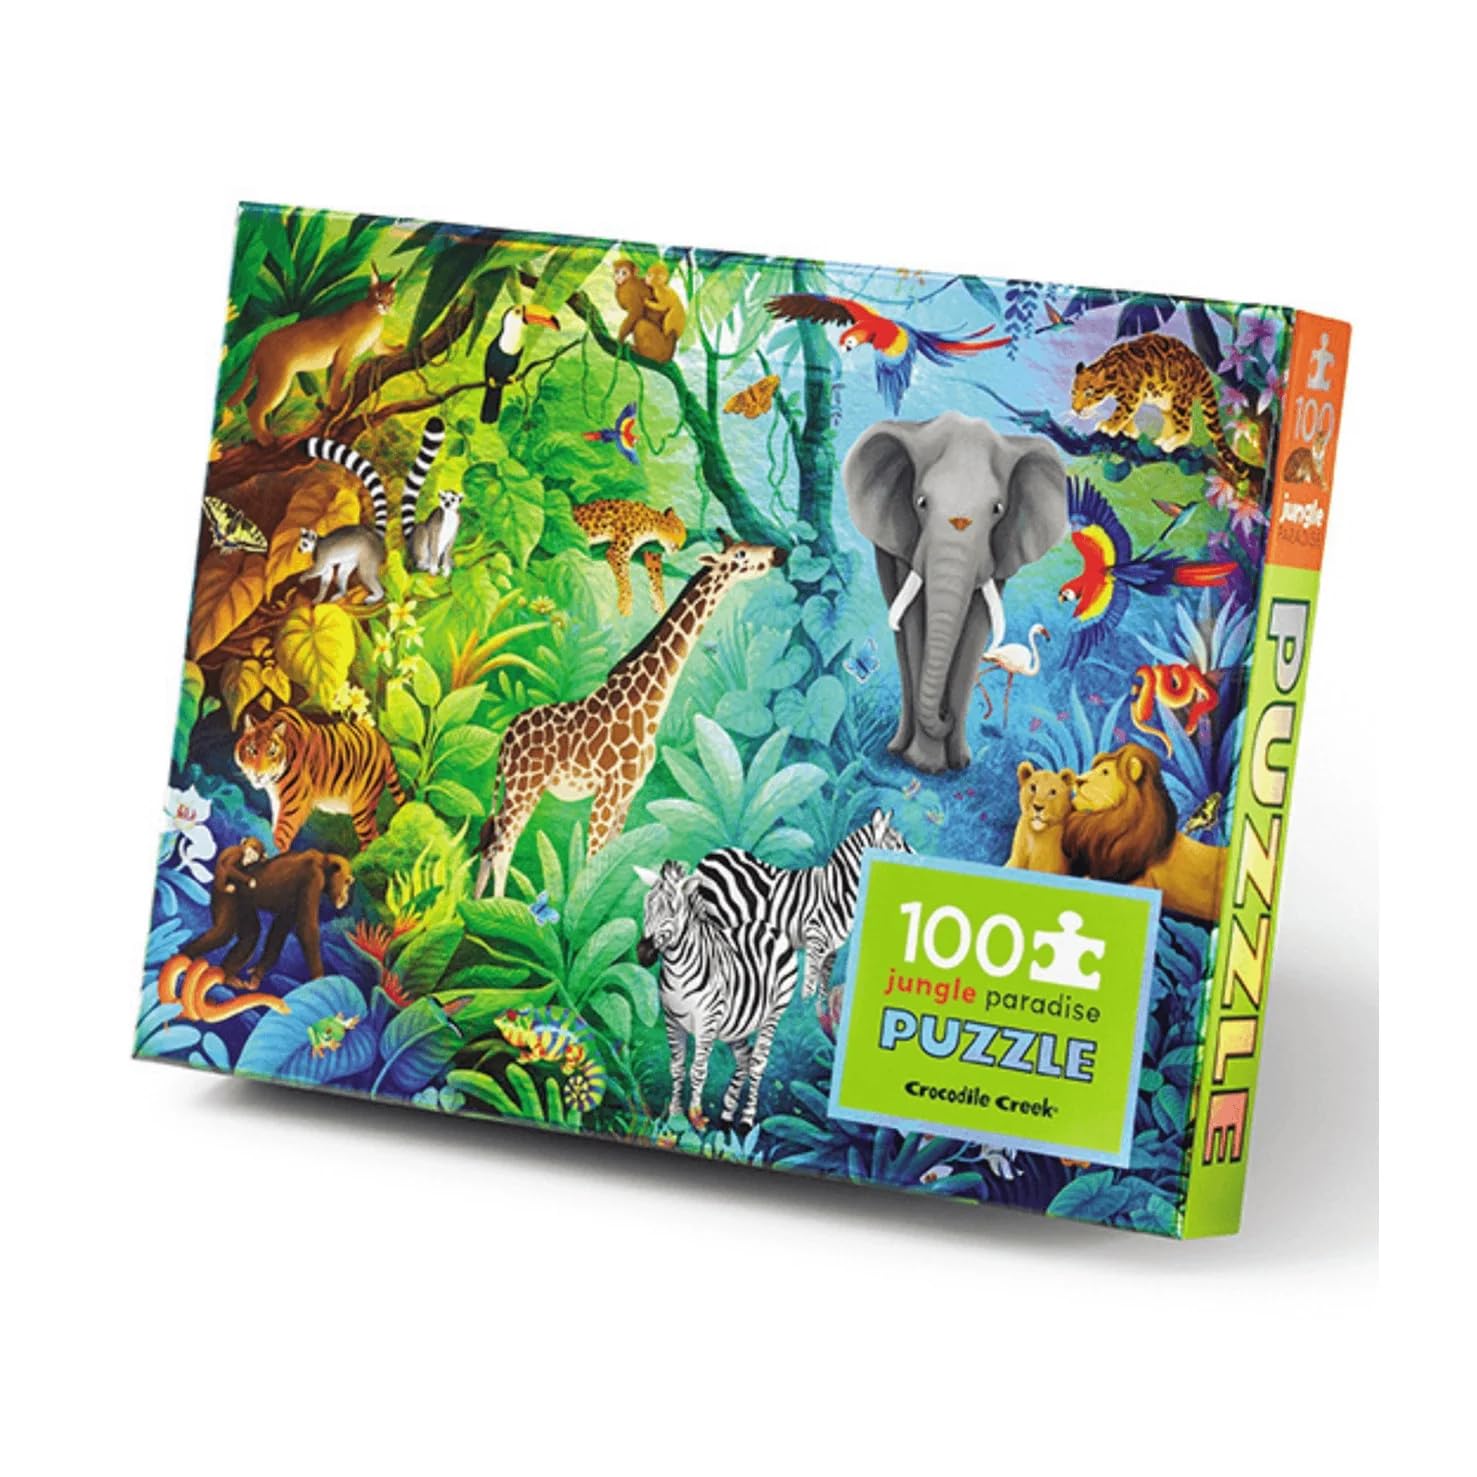 100pc-holographic-puzzle-jungle-paradise